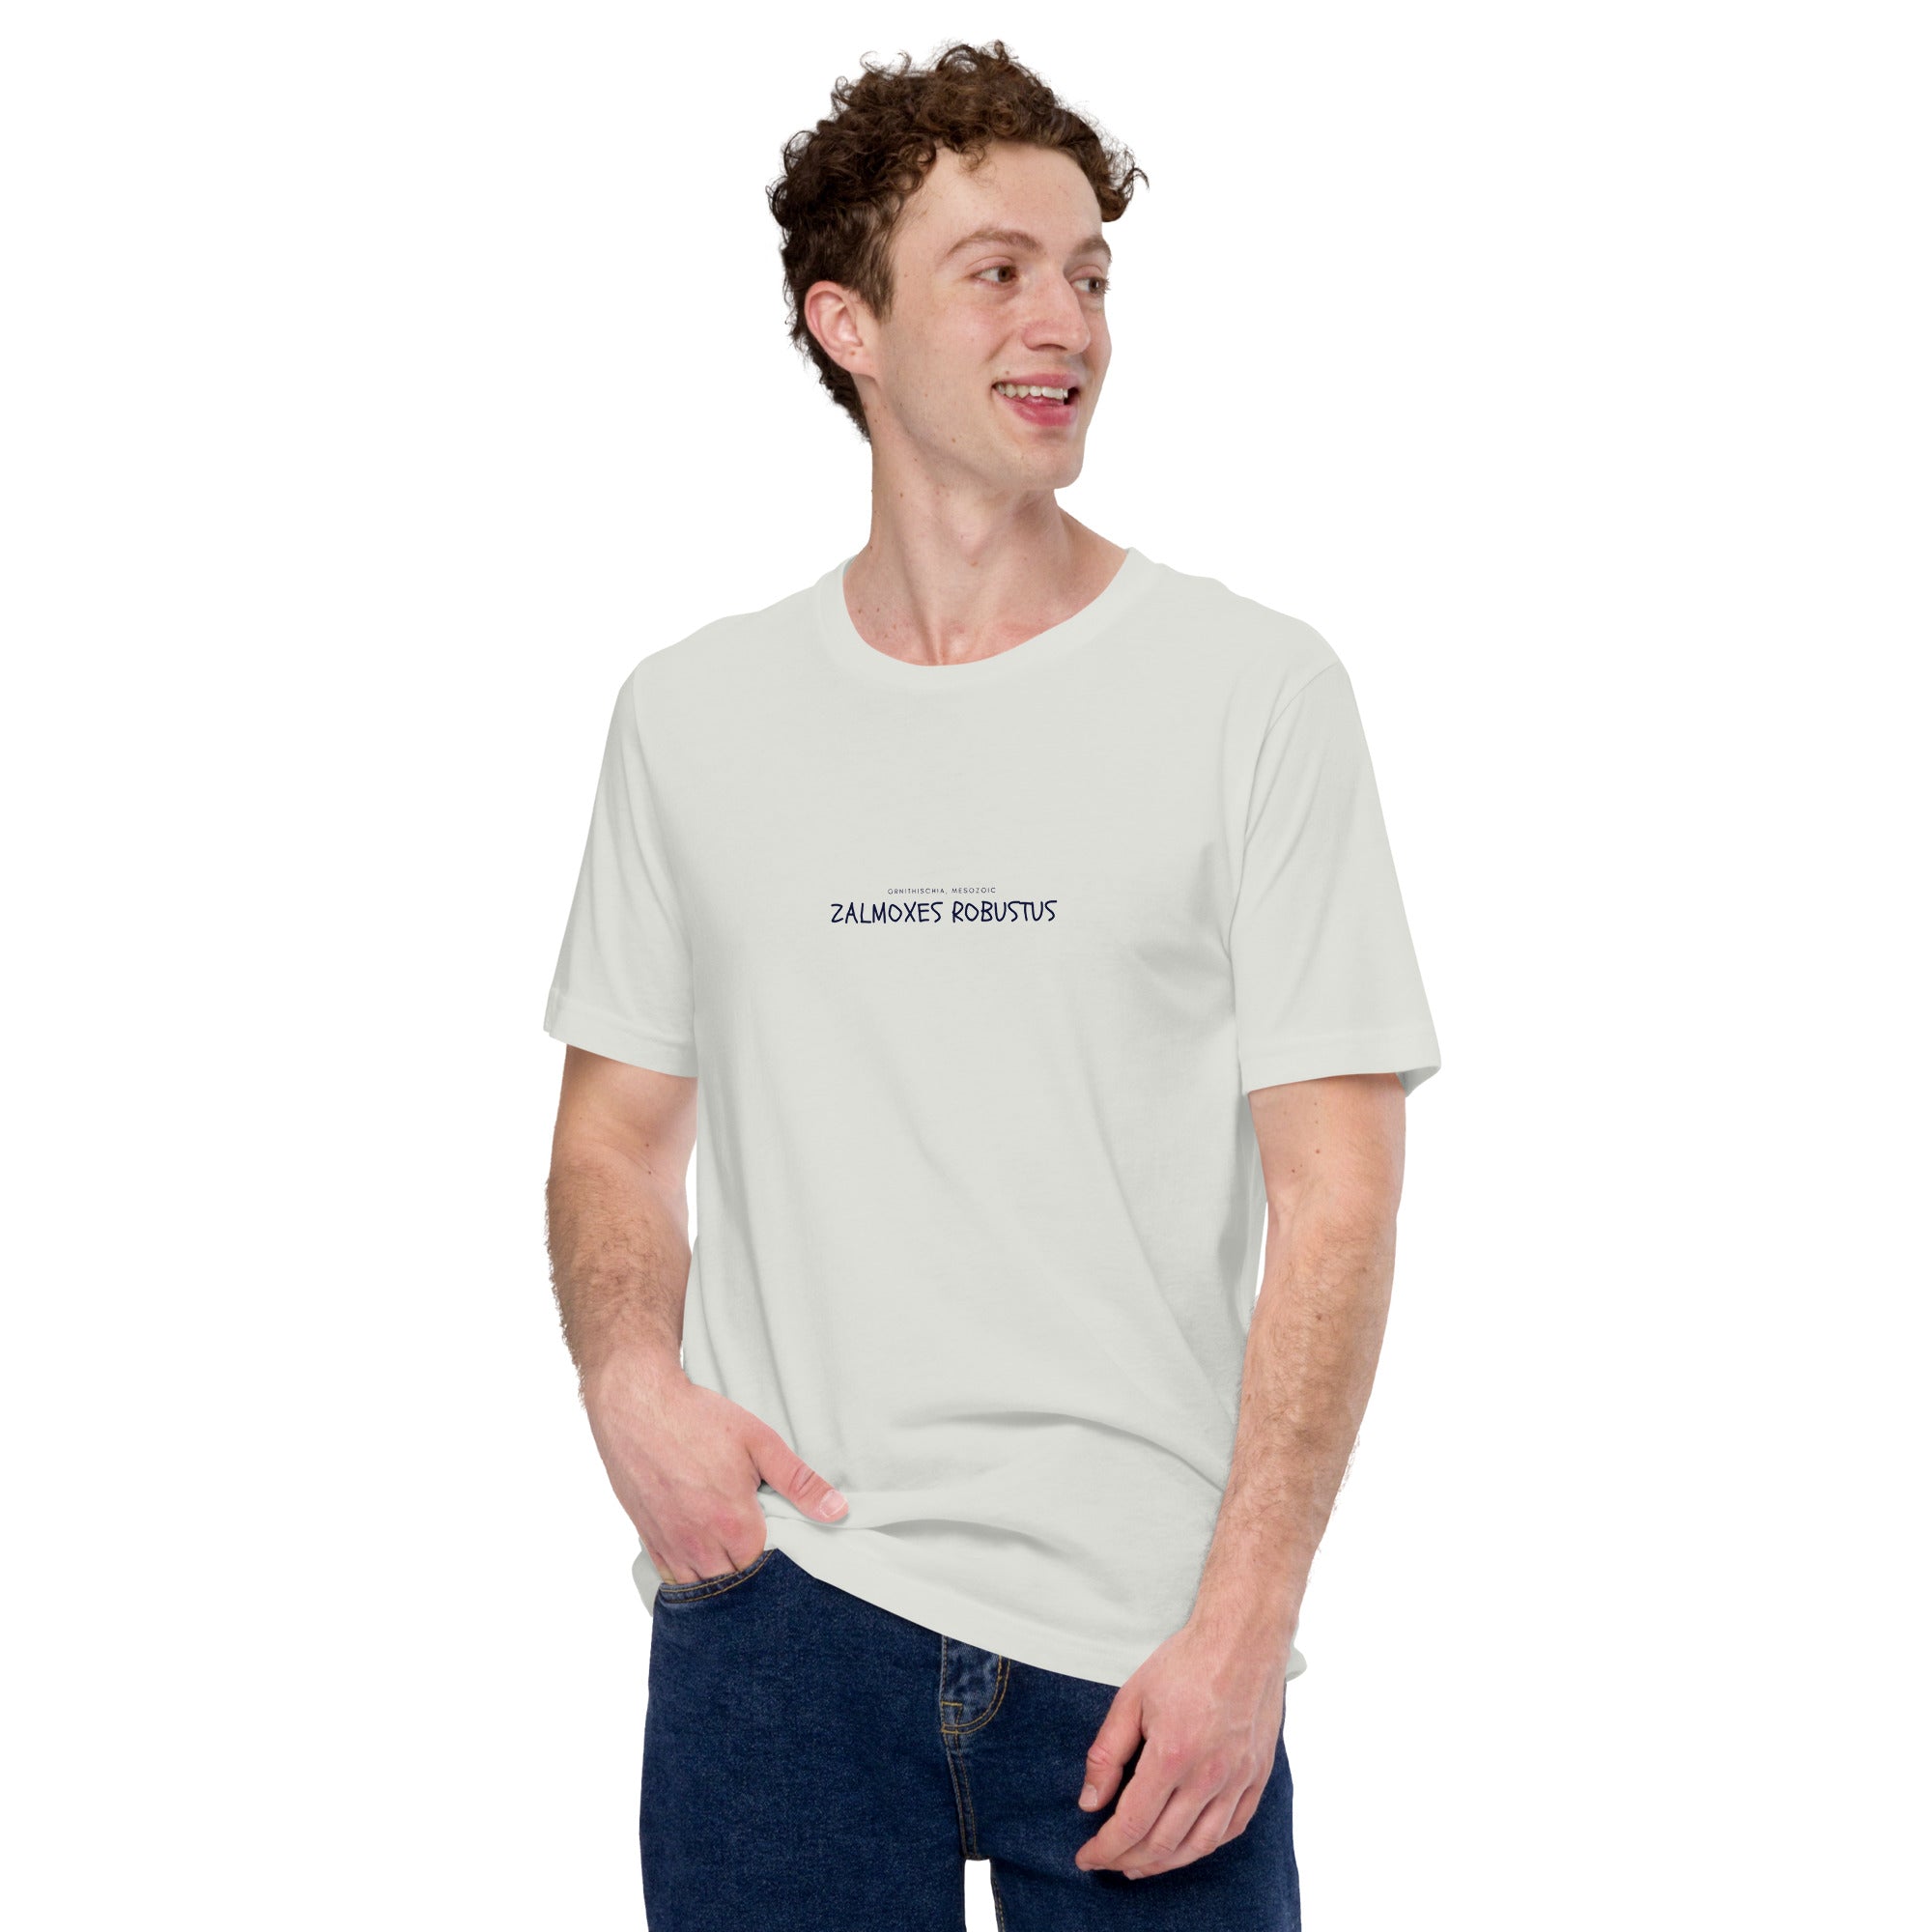 Camiseta unisex con texto "Zalmoxes robustus"